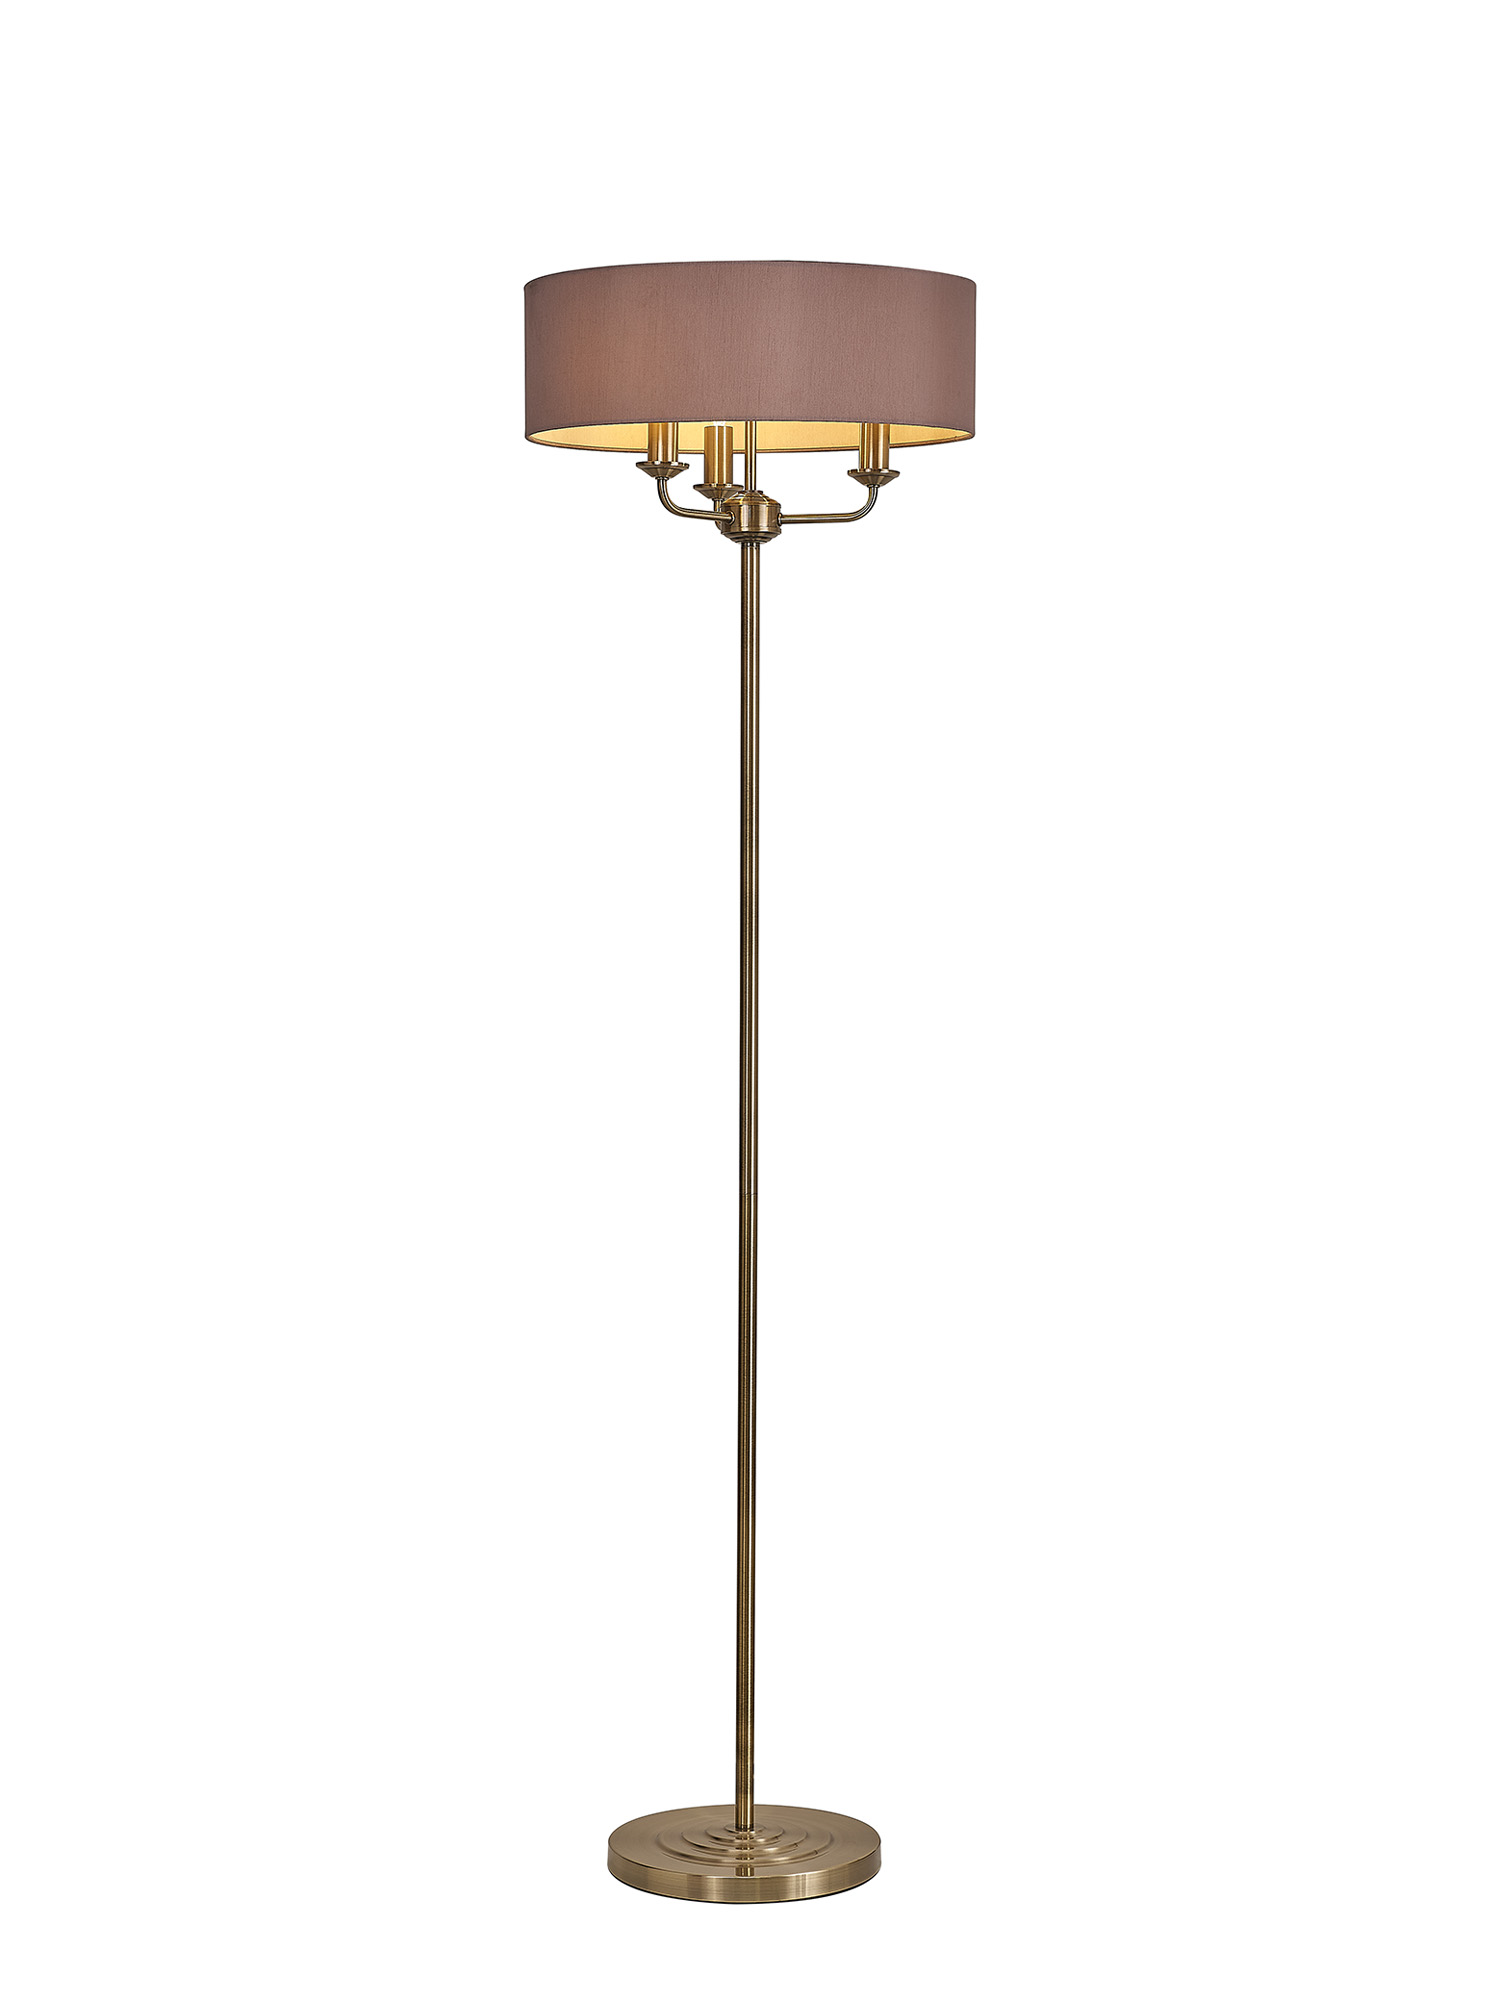 DK0906  Banyan 45cm 3 Light Floor Lamp Antique Brass, Taupe